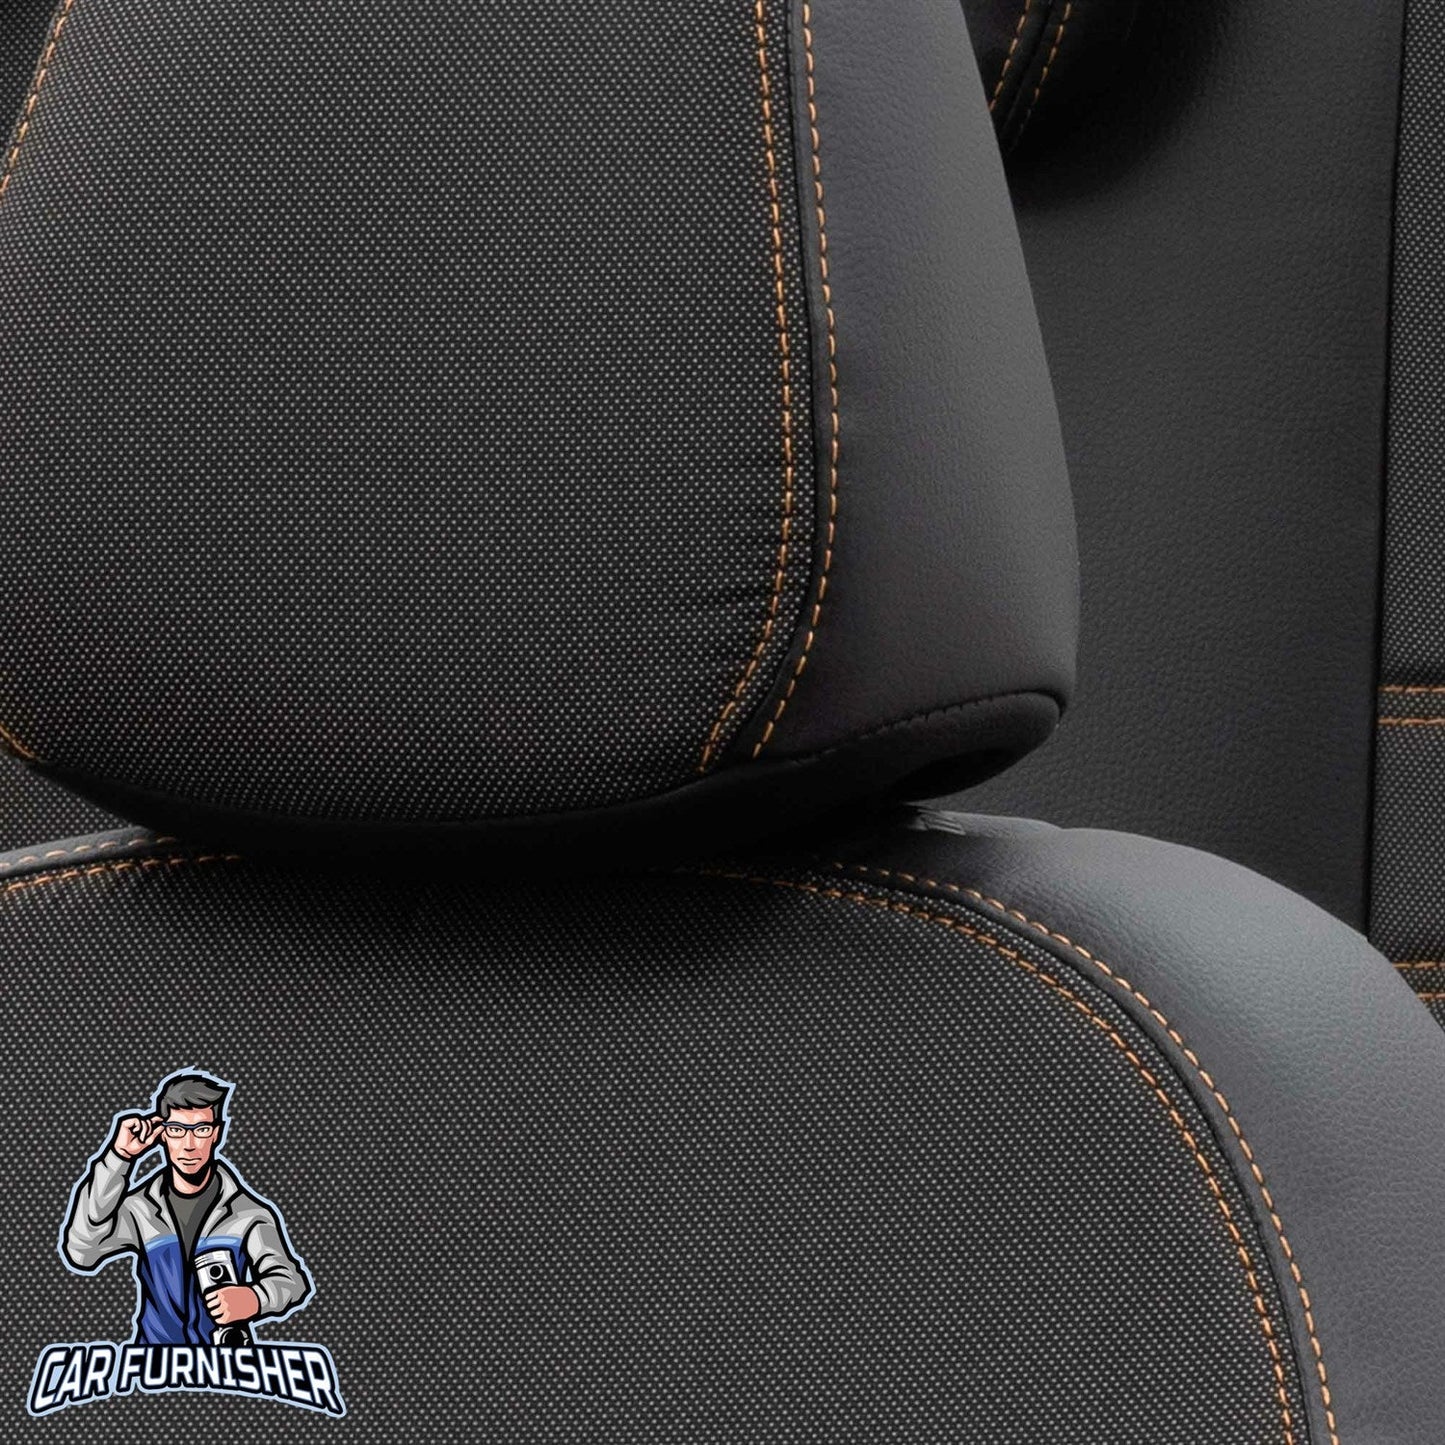 Volkswagen Bora Seat Cover Paris Leather & Jacquard Design Dark Beige Leather & Jacquard Fabric